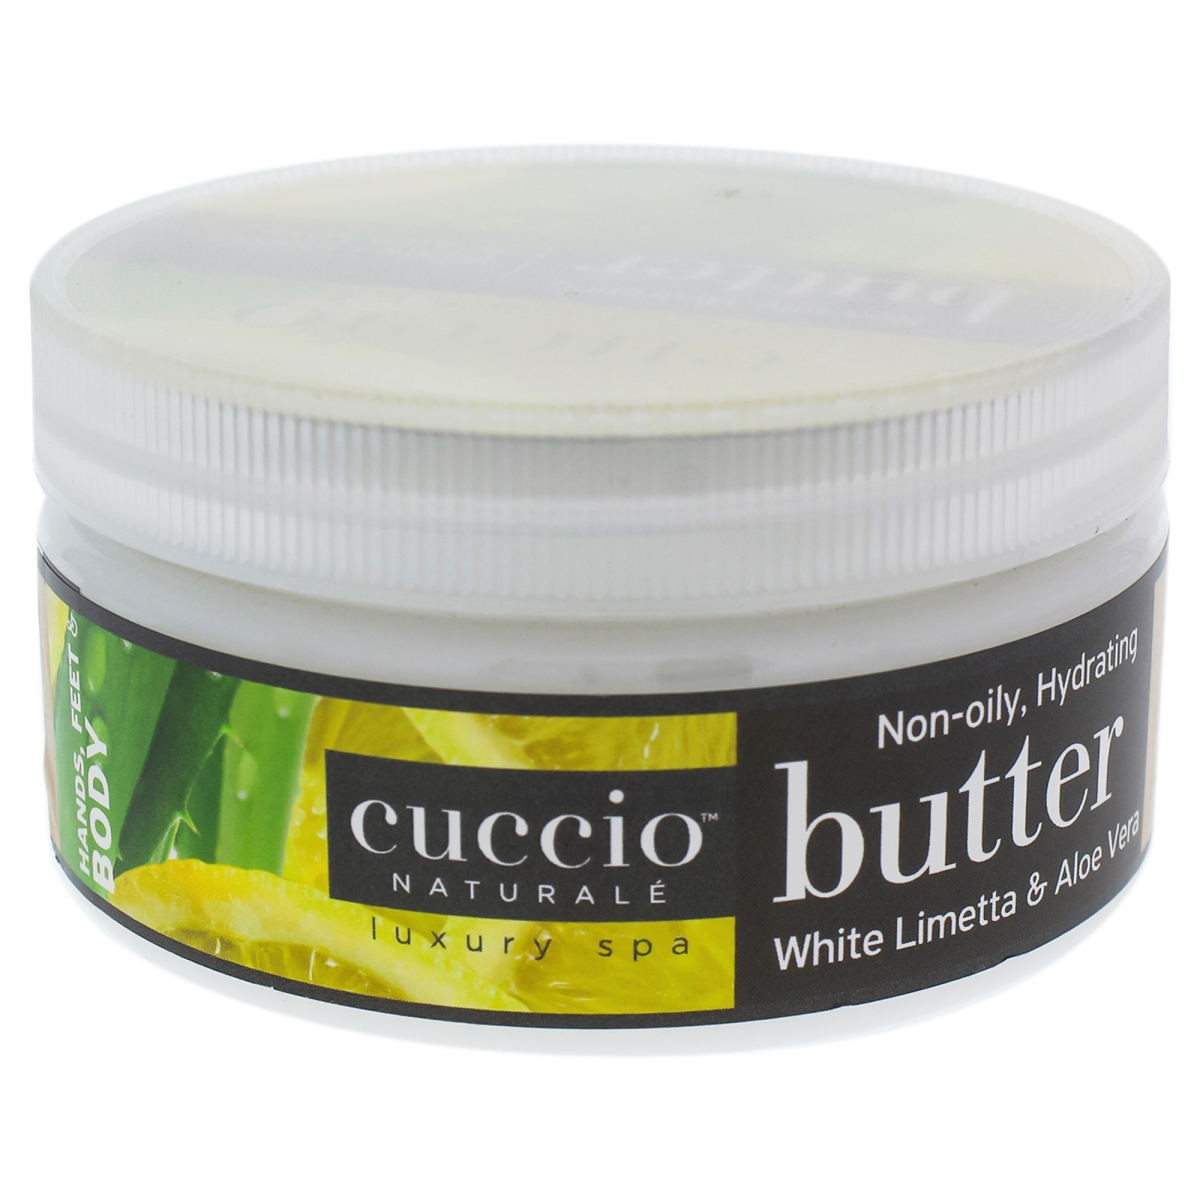 I0090882 Butter Blend Body Lotion For Unisex - White Limetta & Aloe Vera - 8 Oz